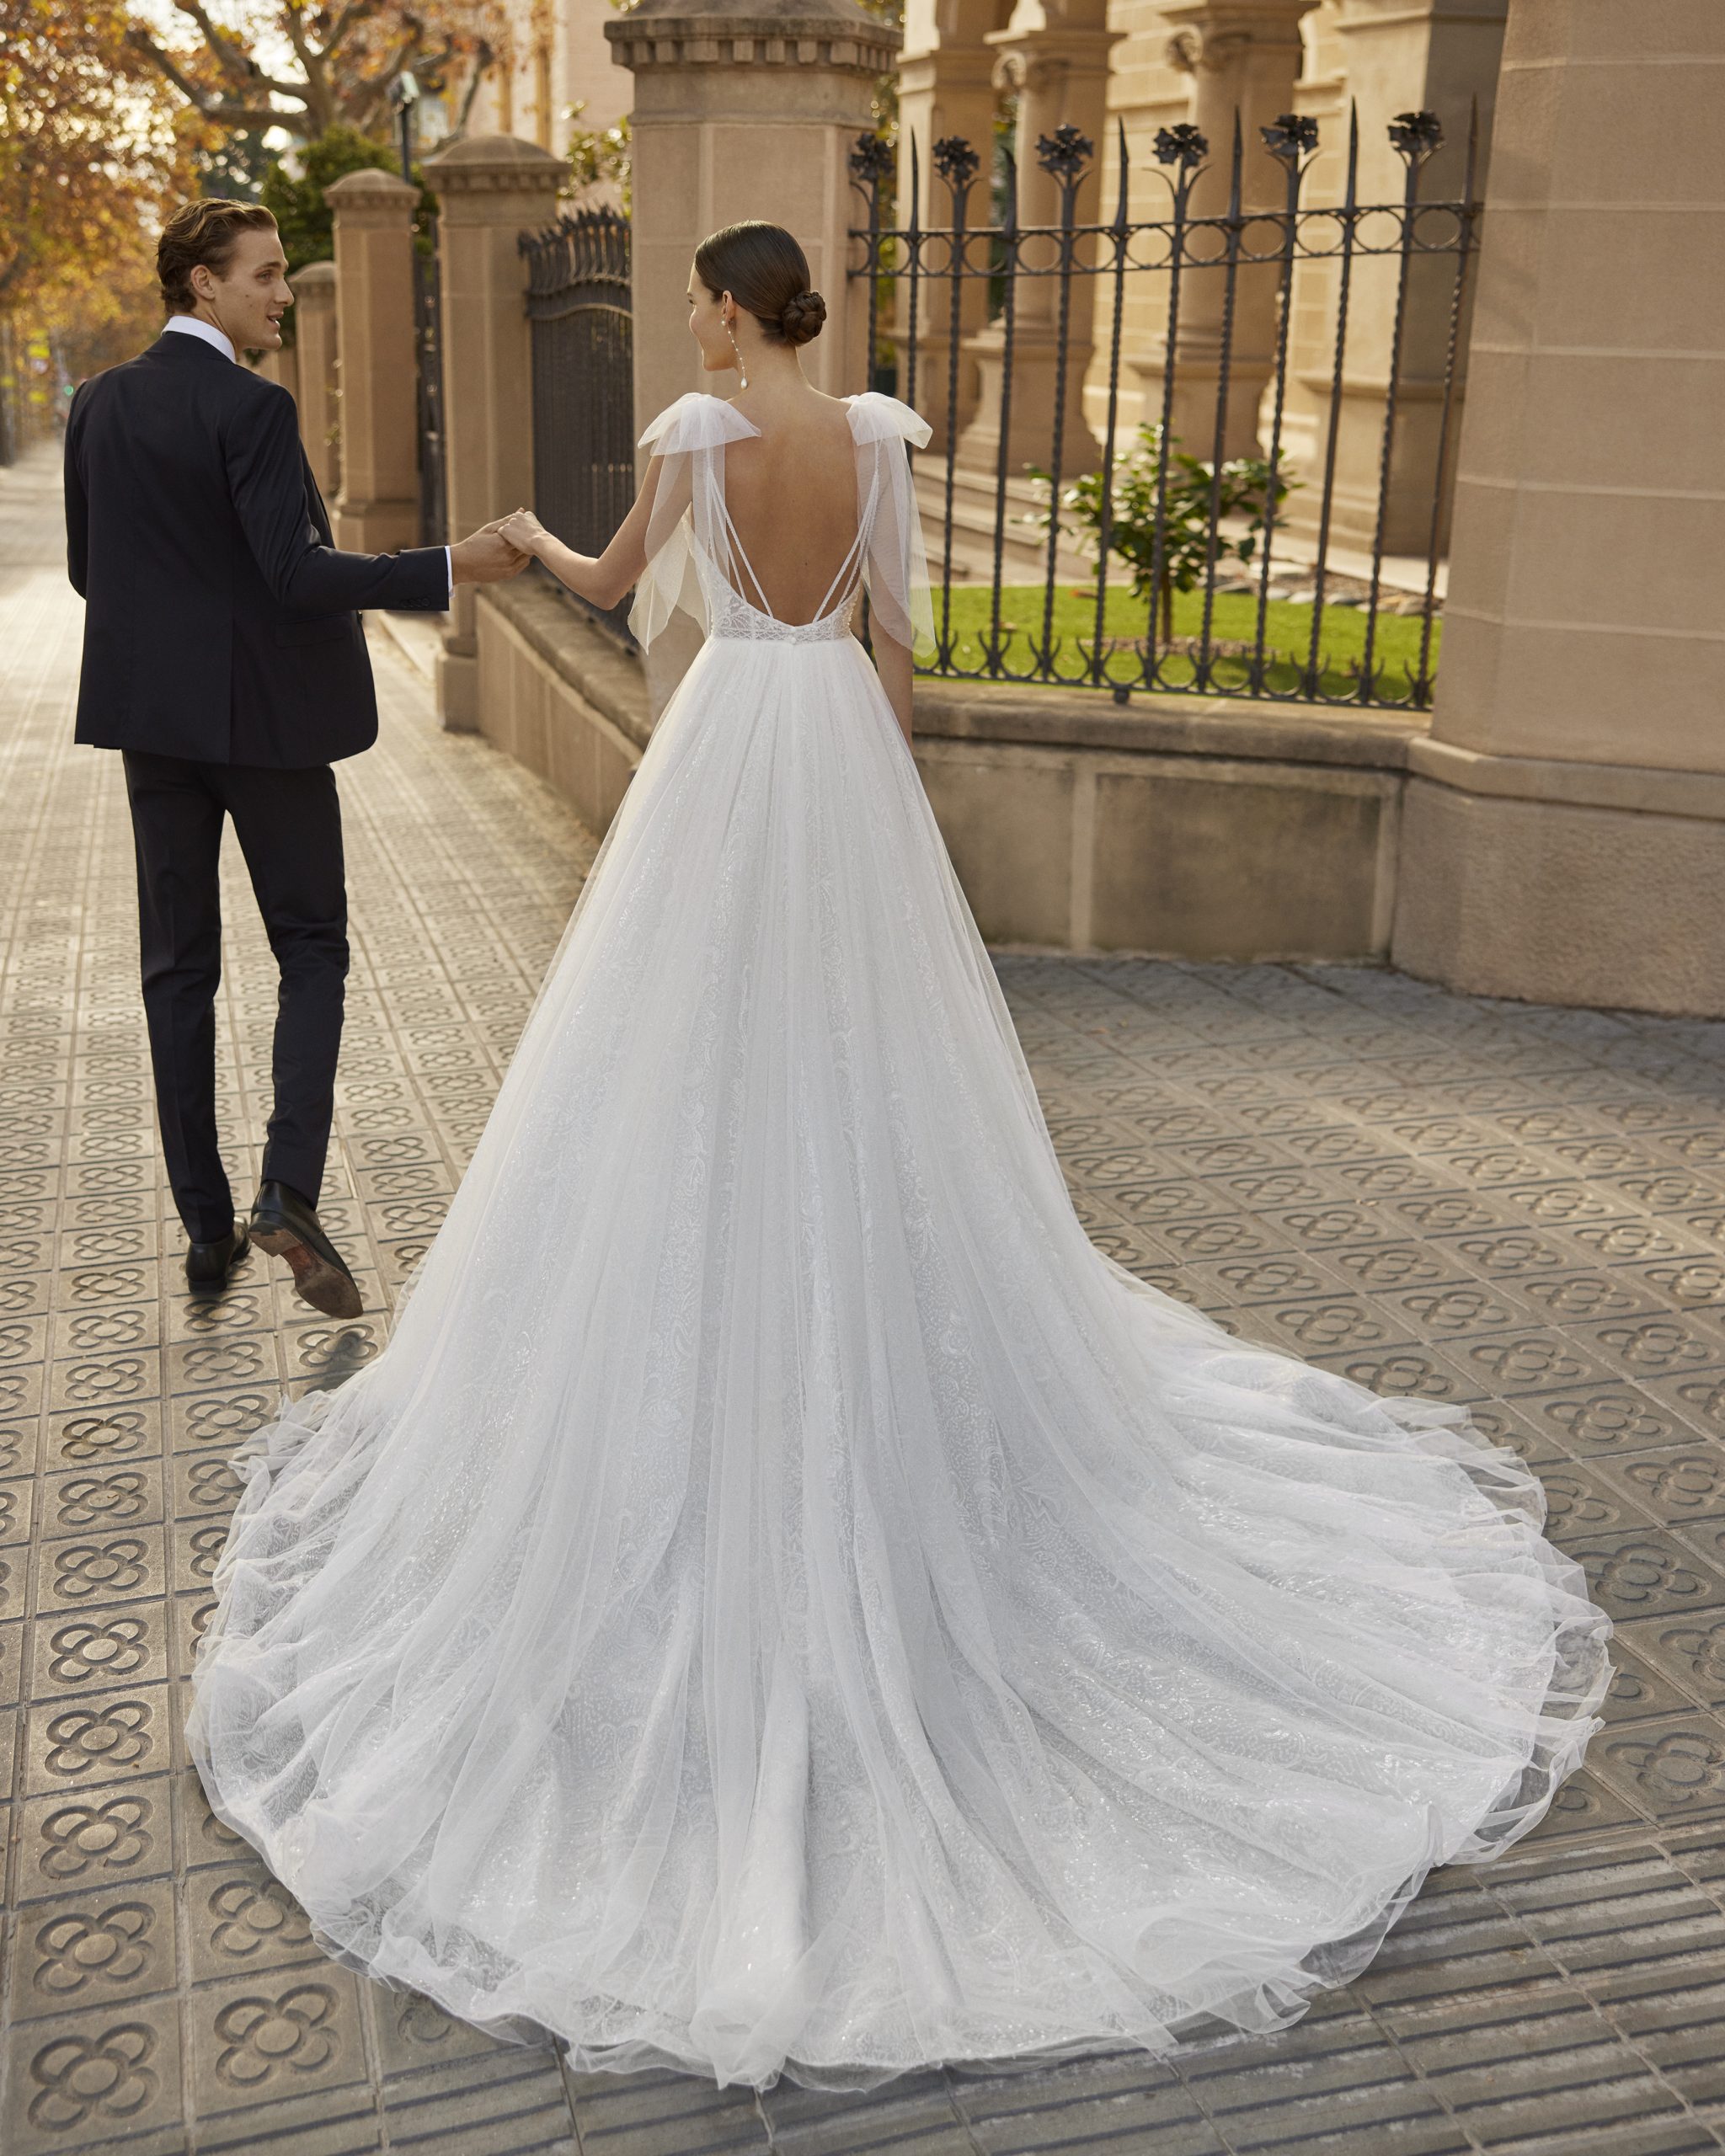 Ivana Bianca robe de mariée princesse aubagne marseille